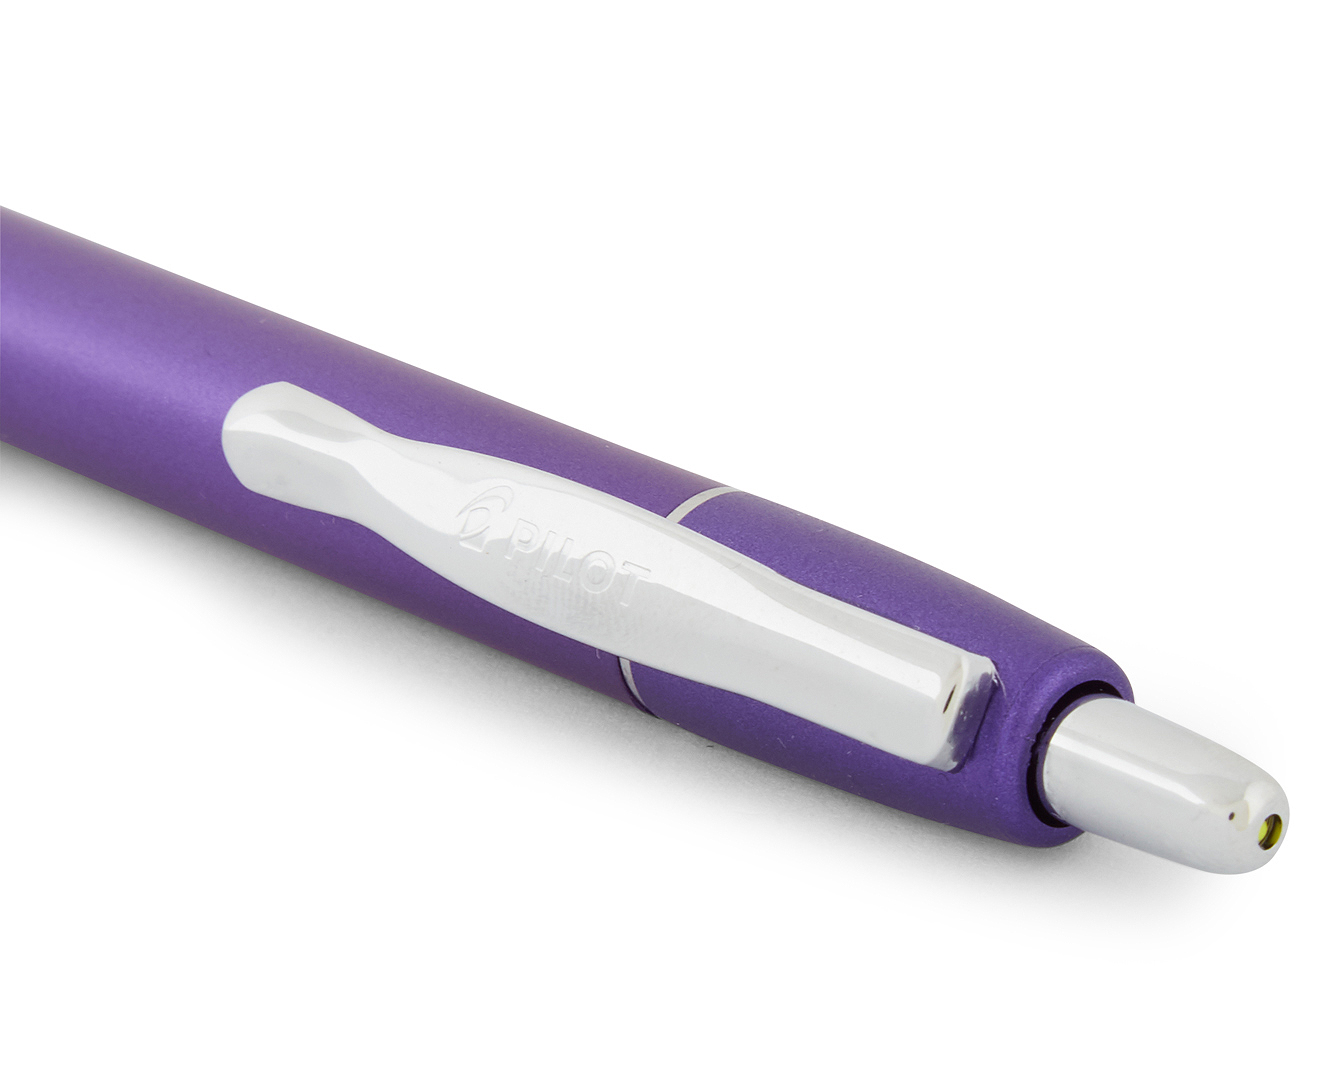 Pilot G2 Limited Edition Fine Gel Ink Pen - Violet Metallic/Blue